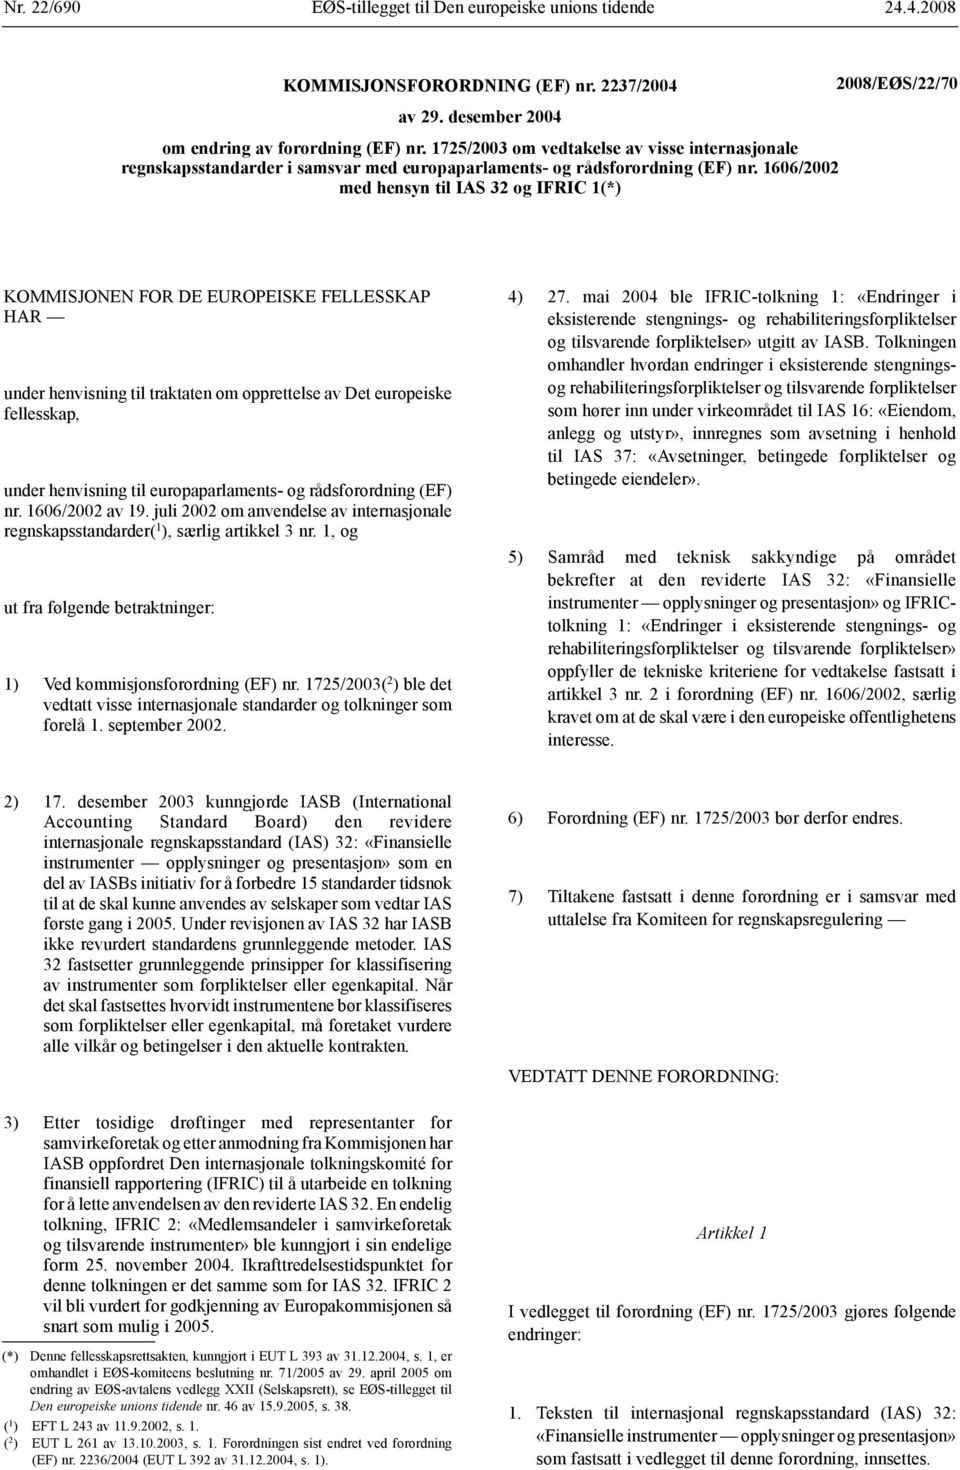 1606/2002 med hensyn til IFRIC 1(*) KOMMISJONEN FOR DE EUROPEISKE FELLESSKAP HAR under henvisning til traktaten om opprettelse av Det europeiske fellesskap, under henvisning til europaparlaments-